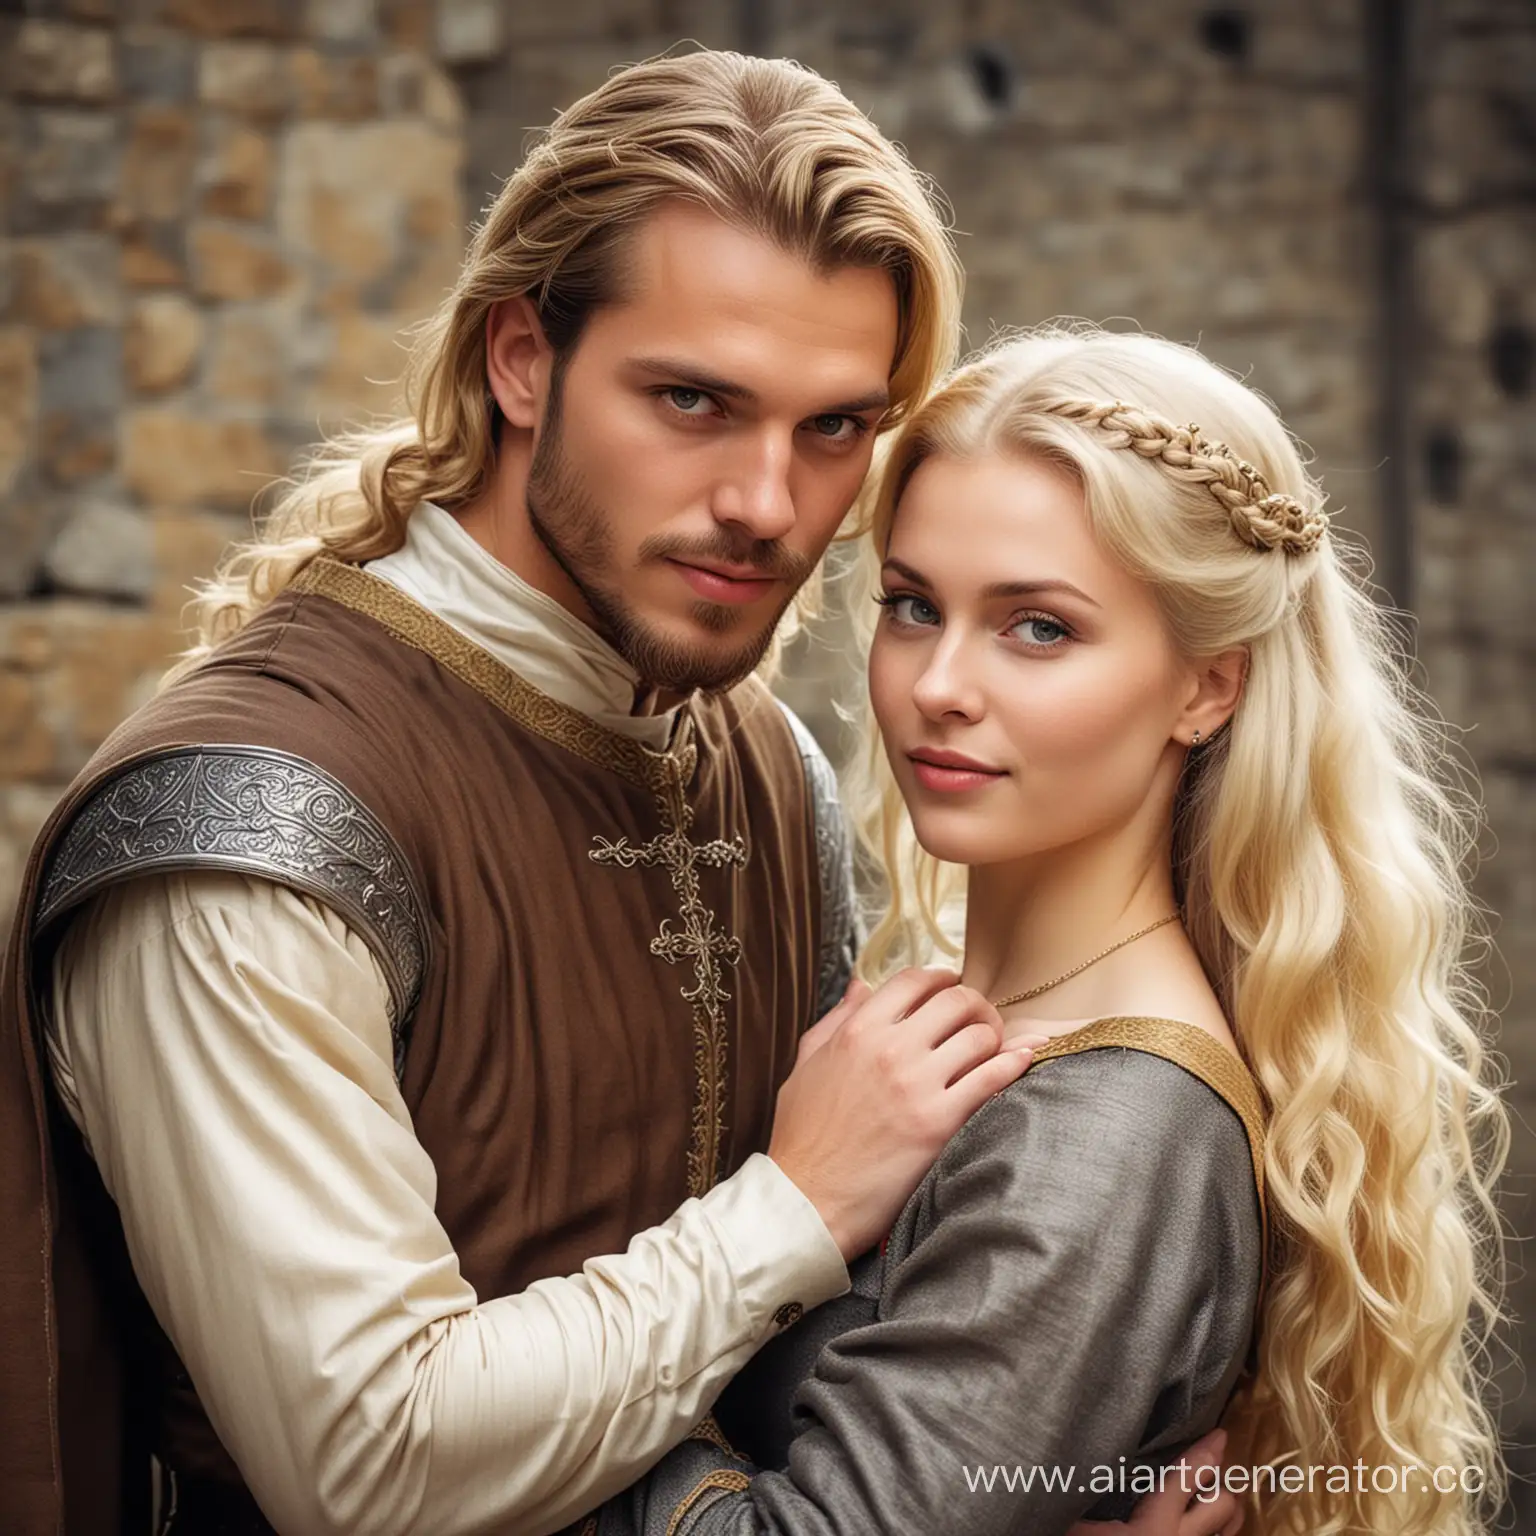 Medieval-Blonde-Couple-in-Elegant-Attire